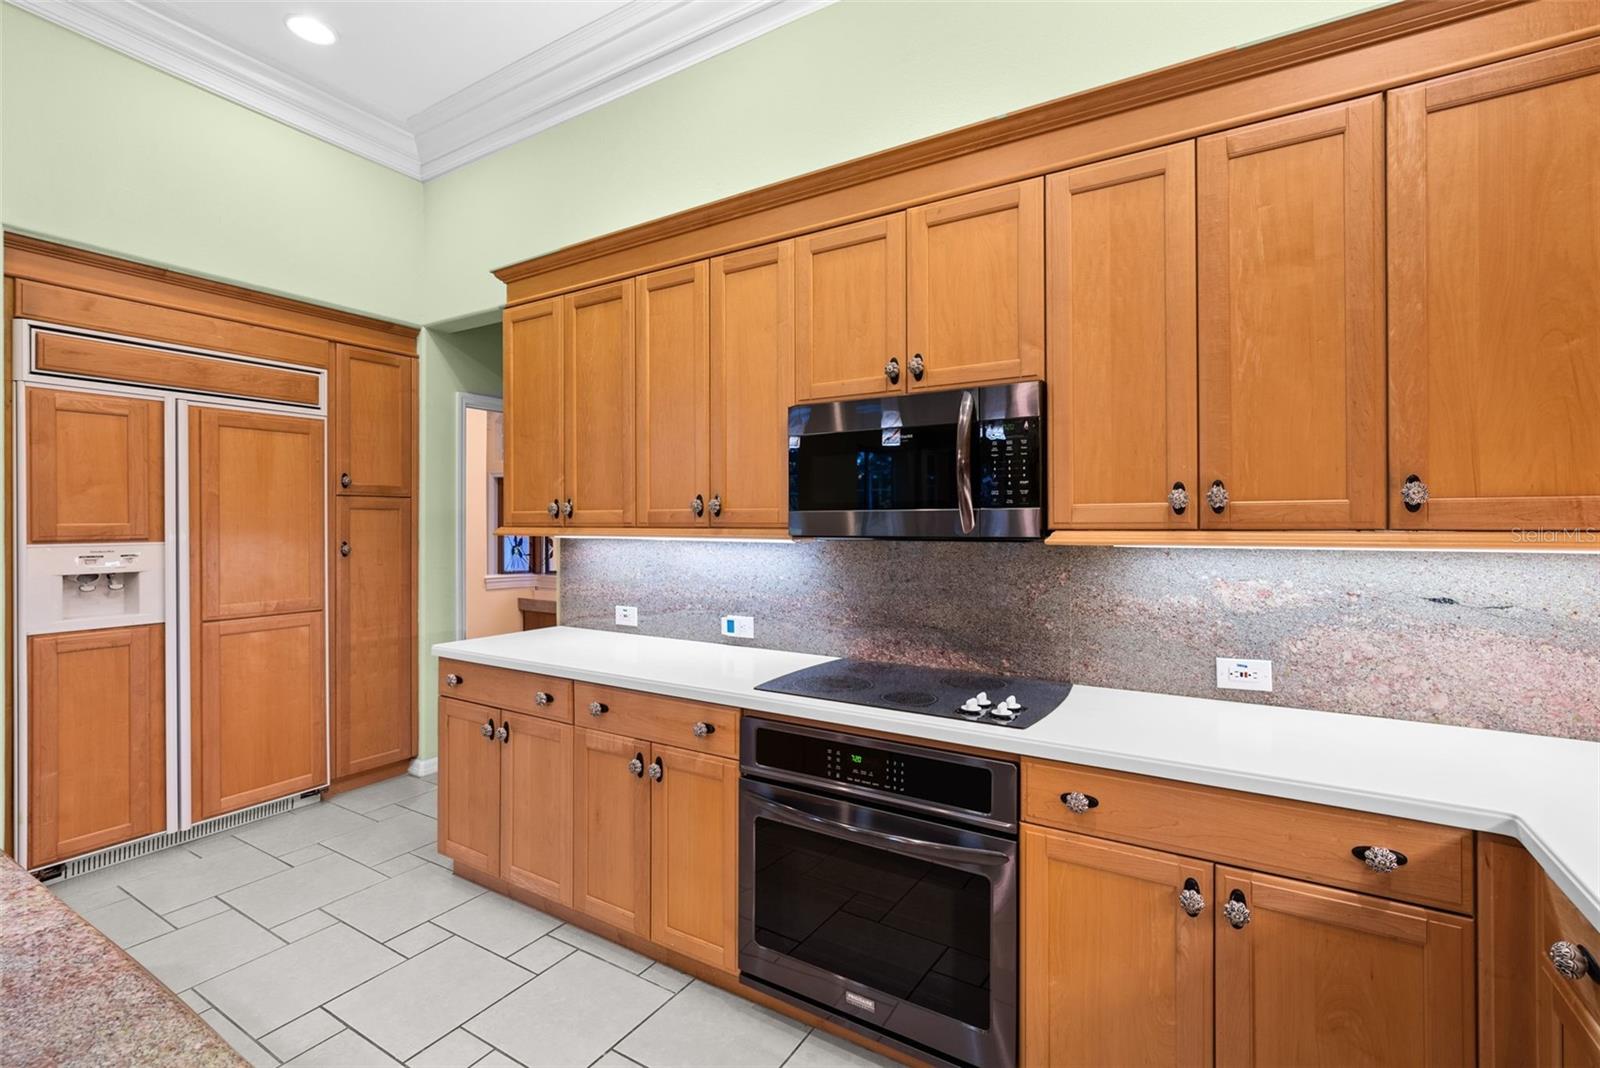 Kitchen - GRANITE backsplash, built-in desk area/cabinet, above/below cabinet lighting, recessed ceiling lighting